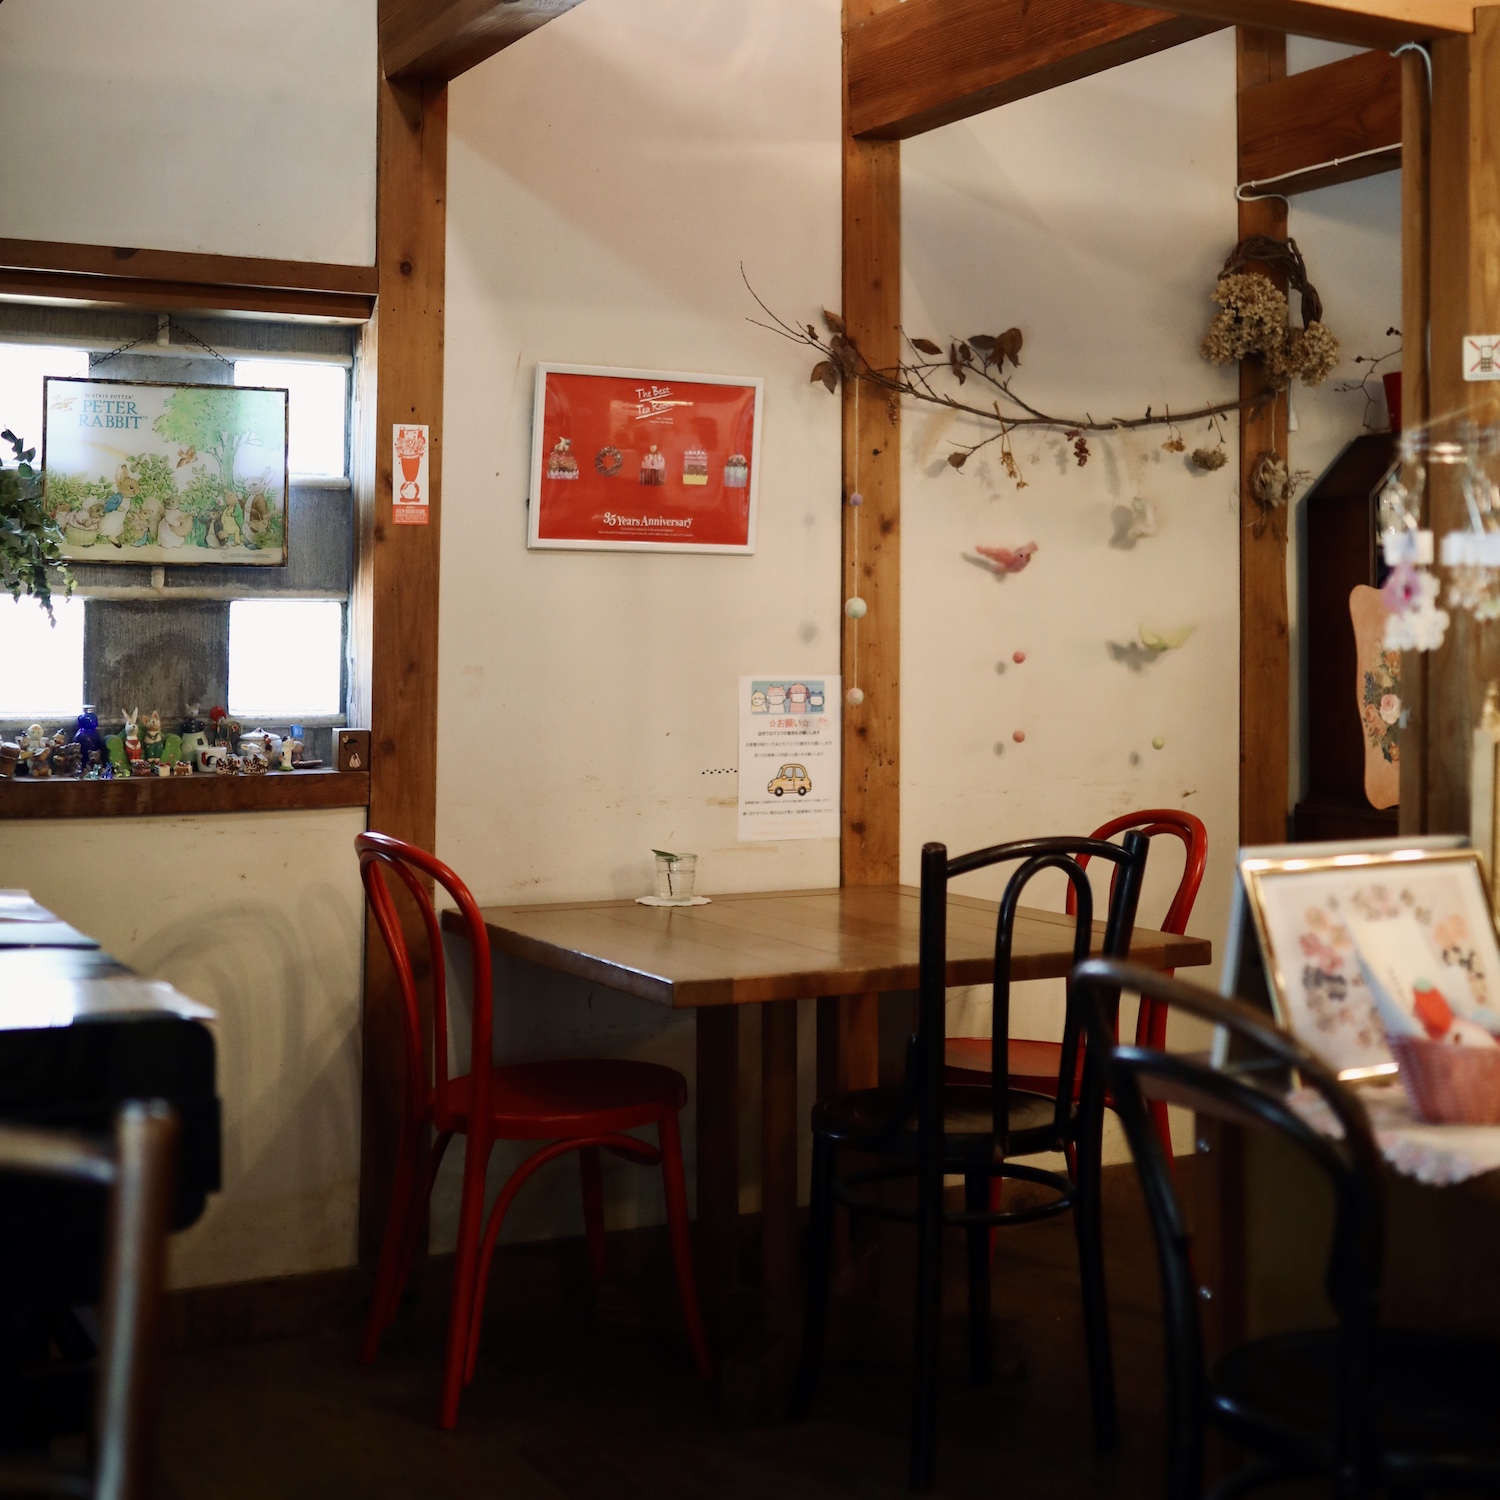 Rue Cafe（ルーカフェ）｜香南市夜須の港町にひっそりとたたずむ古民家カフェ。